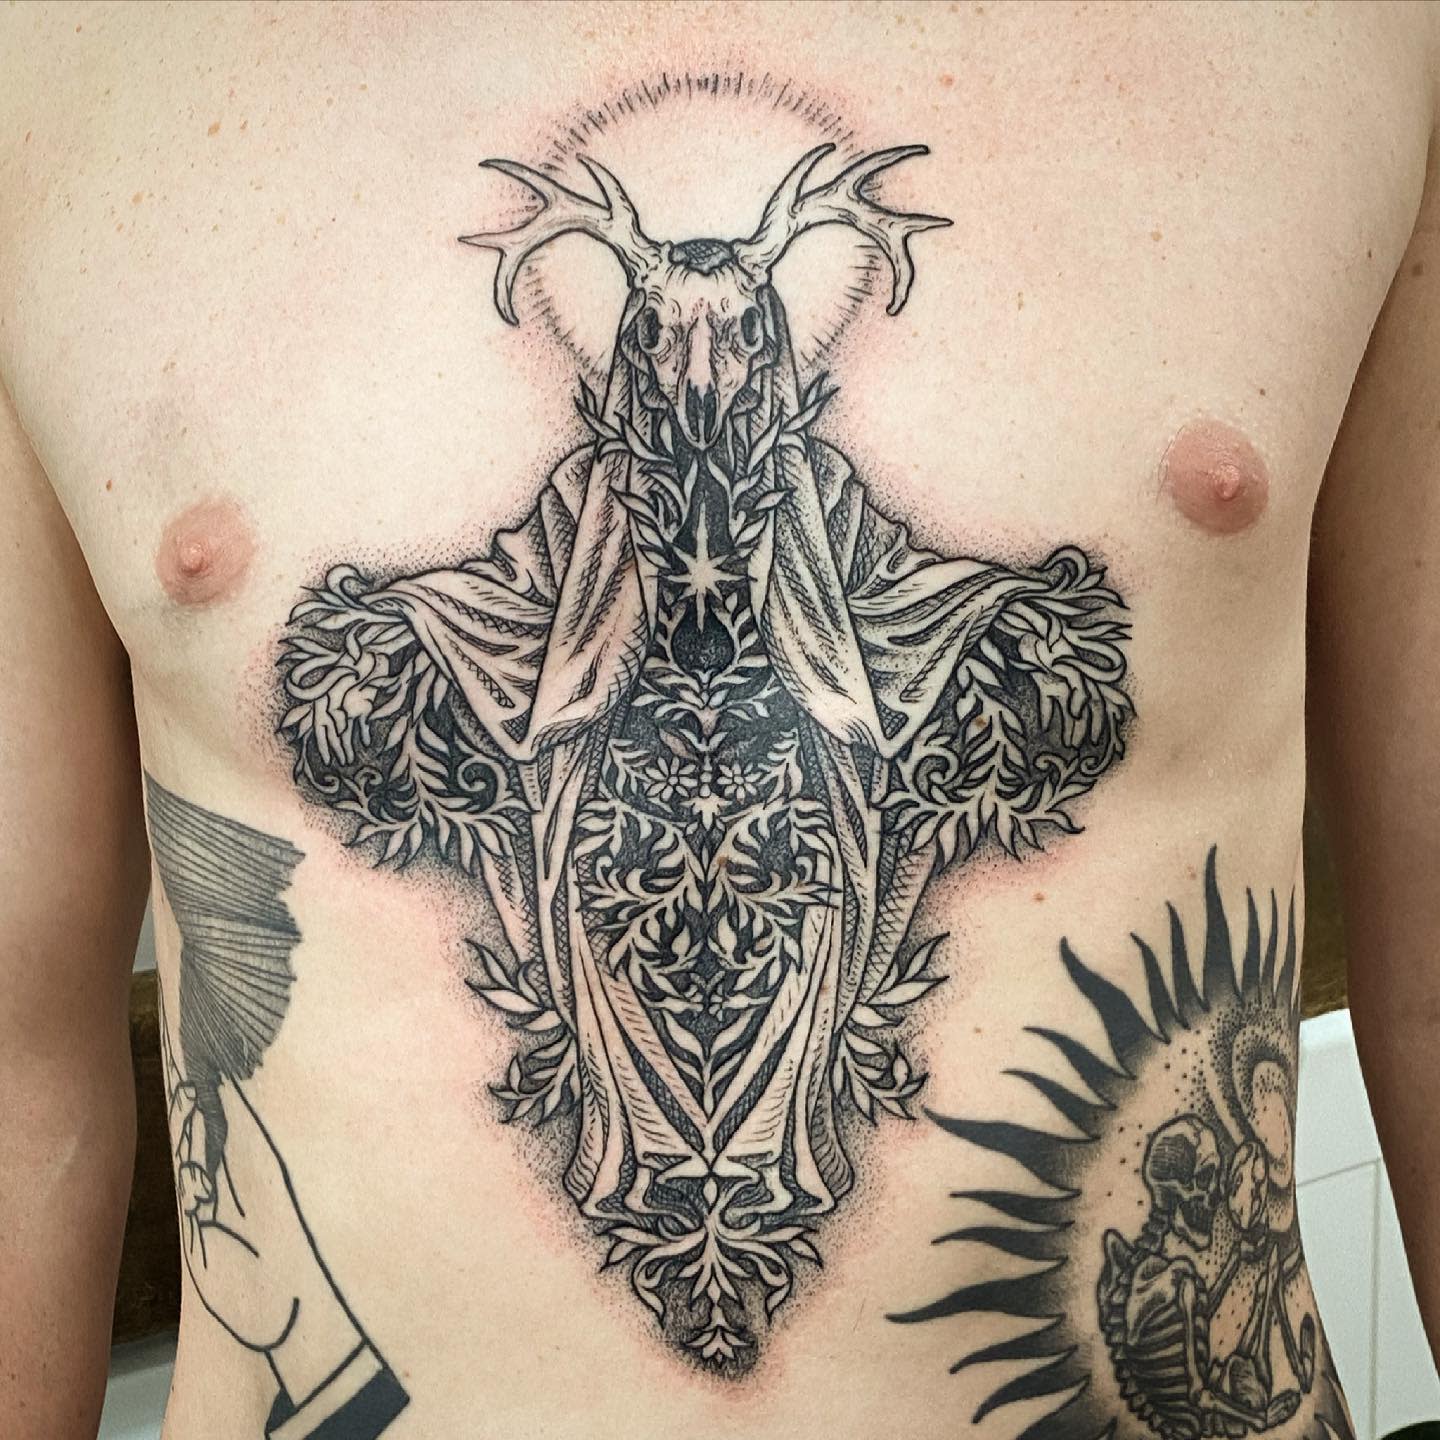 Tattoosday (A Tattoo Blog): Jeff Mann: Wiccan, Pagan, Tattooed Poet